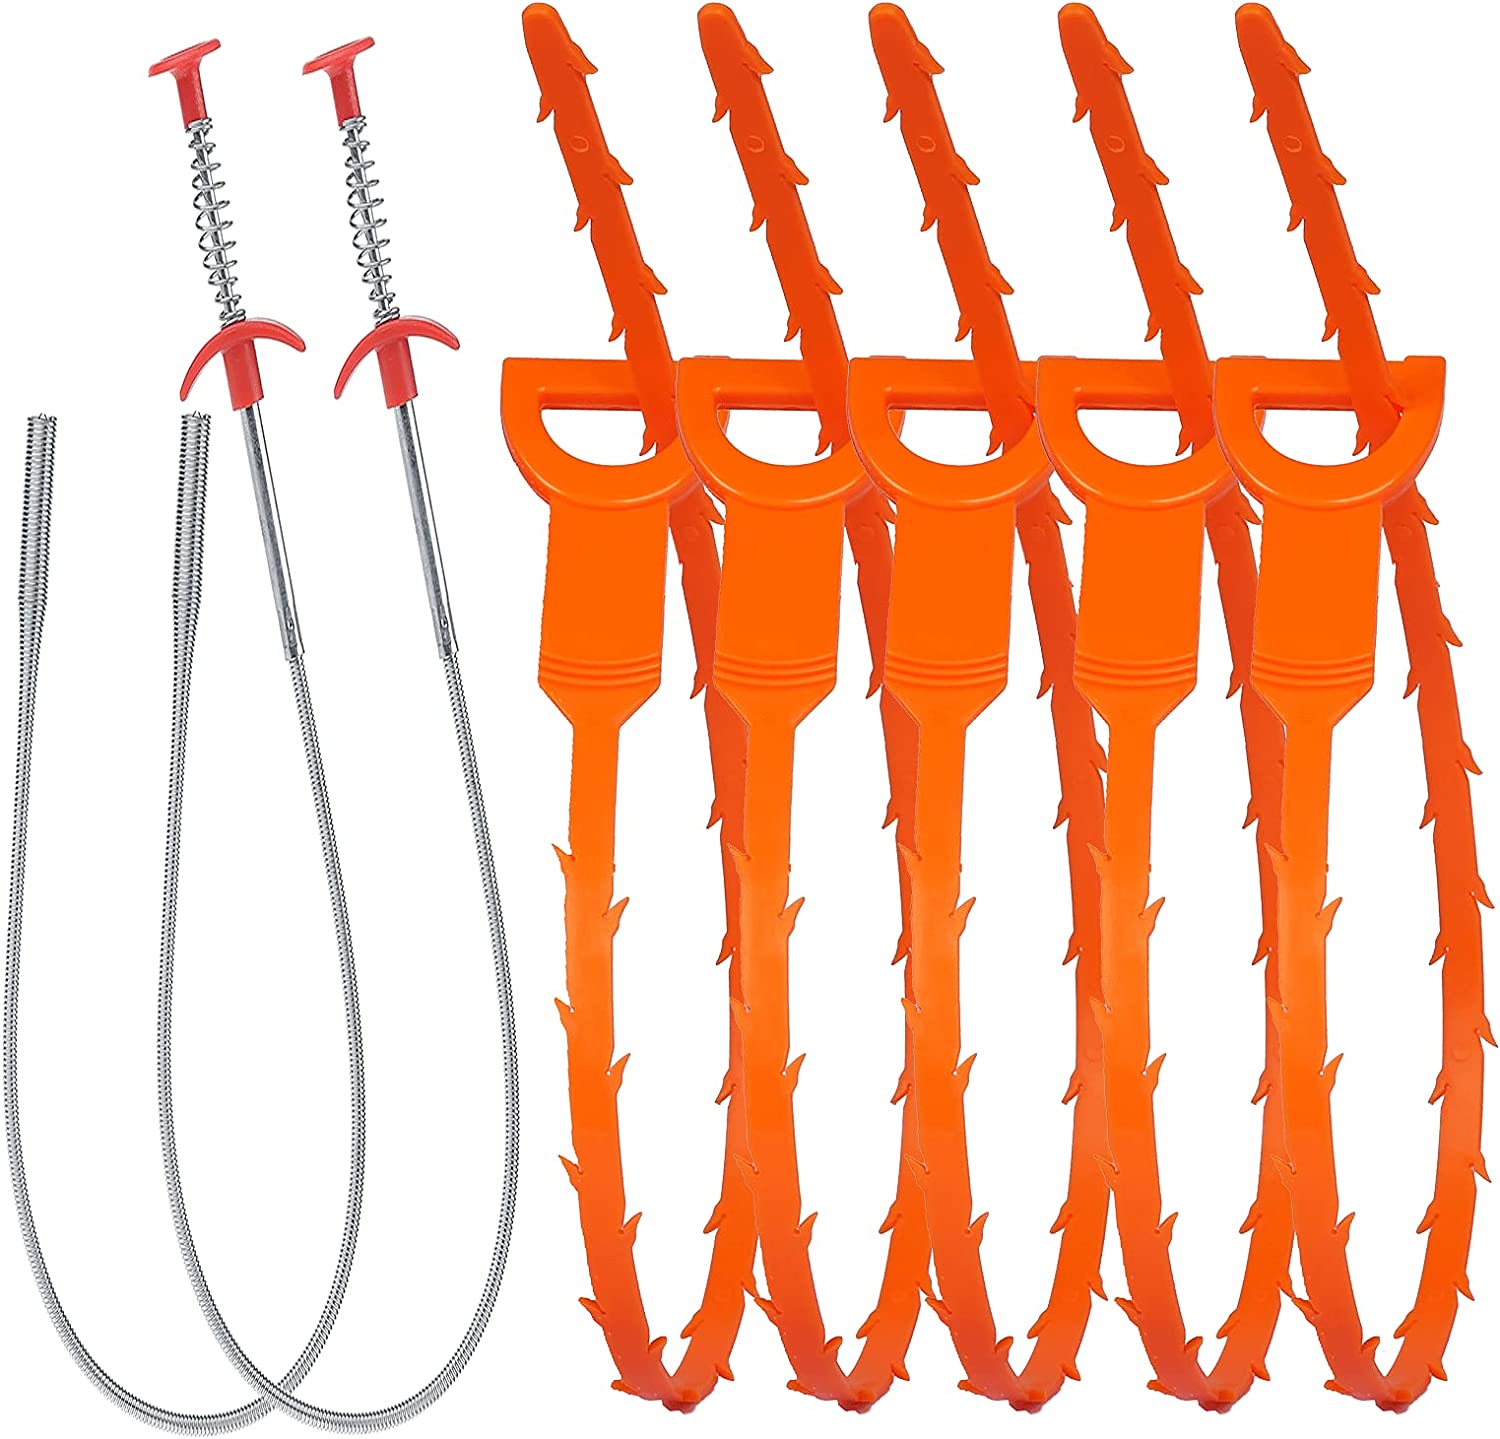 LONGGUI Barbed Design Plastic Drain Snakes, 7-Pack